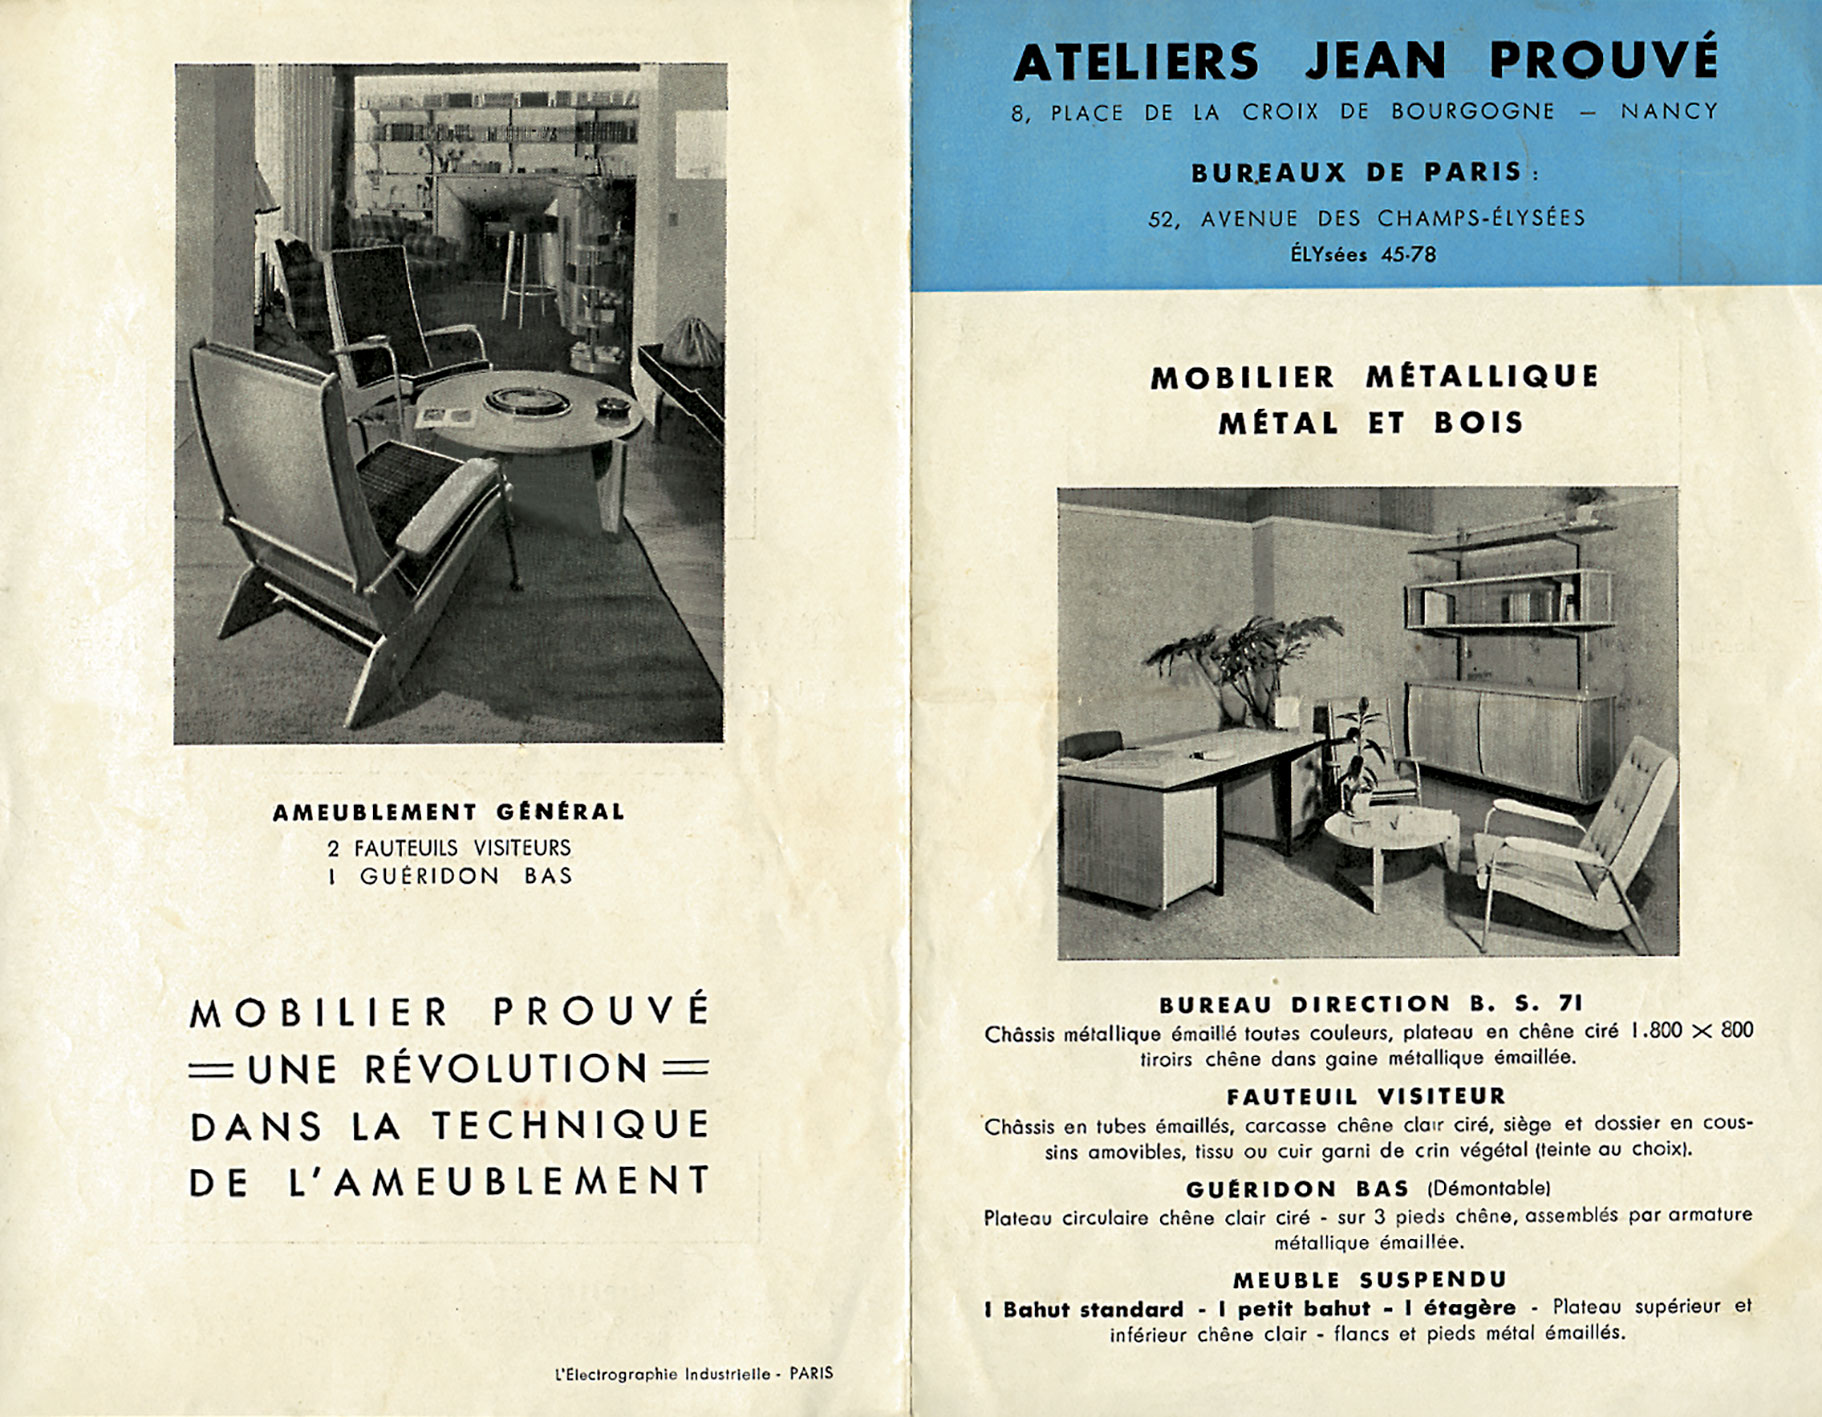 Brochure publicitaire <i>Ateliers Jean Prouvé, Mobilier métallique, métal et bois</i>, Paris, L’Électrographie industrielle, 1949.